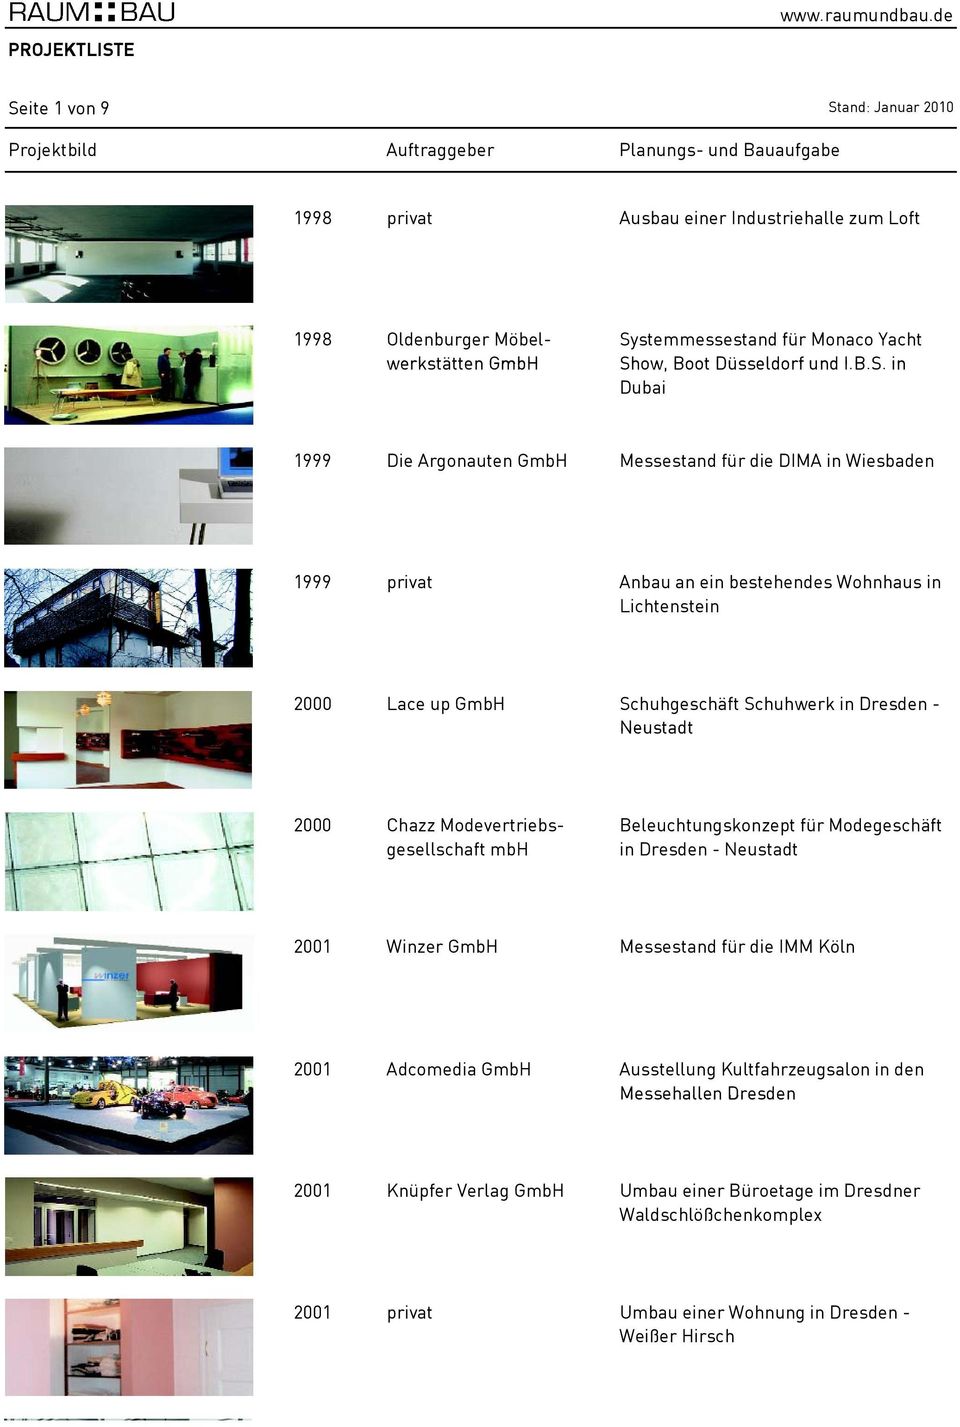 Neustadt 2000 Chazz Modevertriebsgesellschaft mbh Beleuchtungskonzept für Modegeschäft in Dresden - Neustadt 2001 Winzer GmbH Messestand für die IMM Köln 2001 Adcomedia GmbH